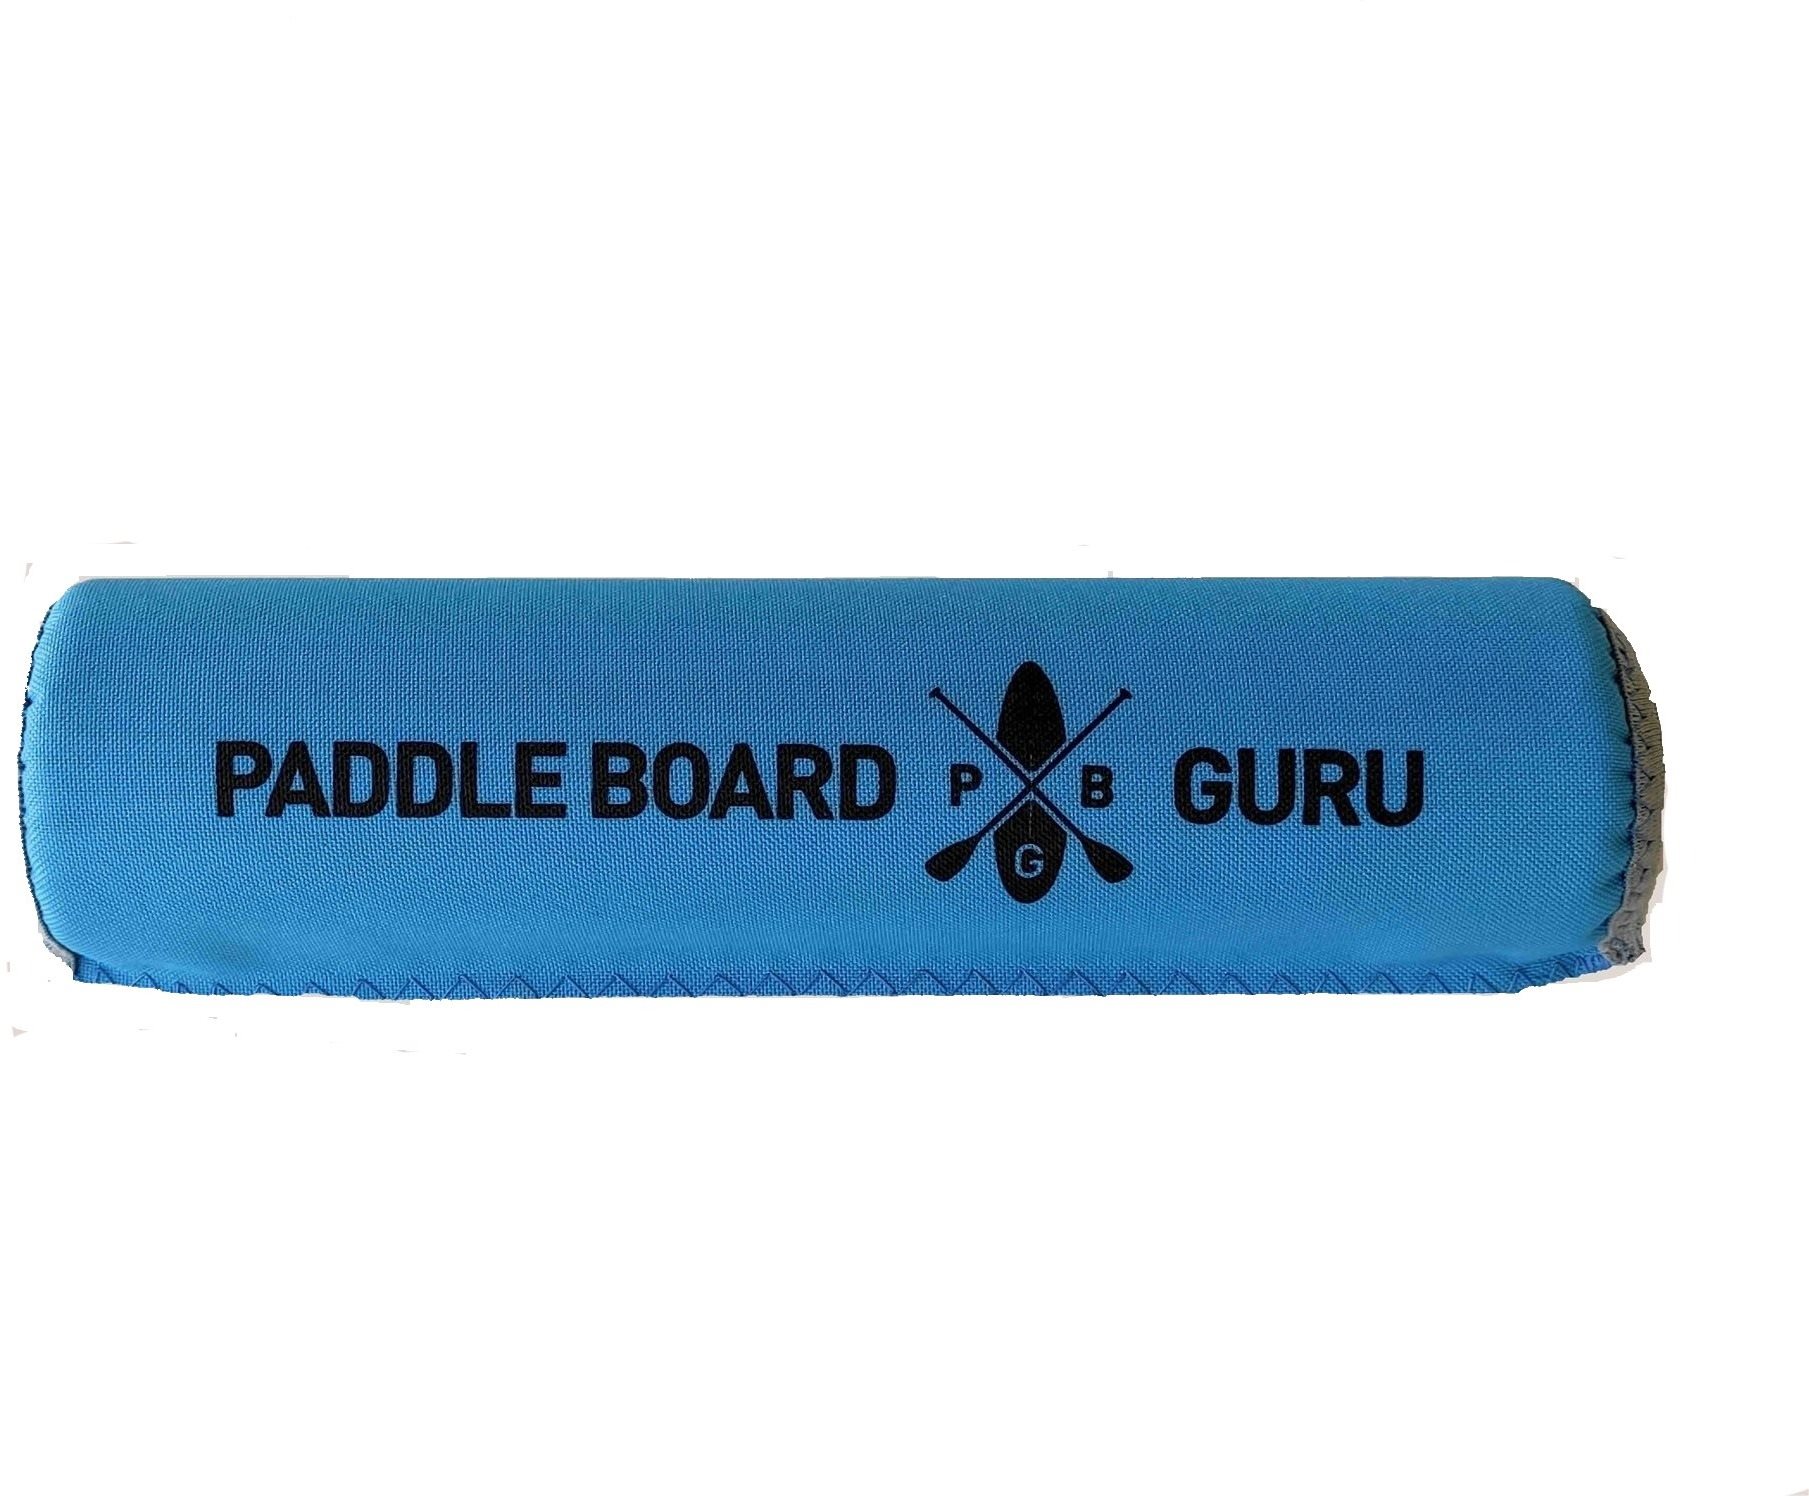 Védő Paddle floater Paddleboardguru neon blue